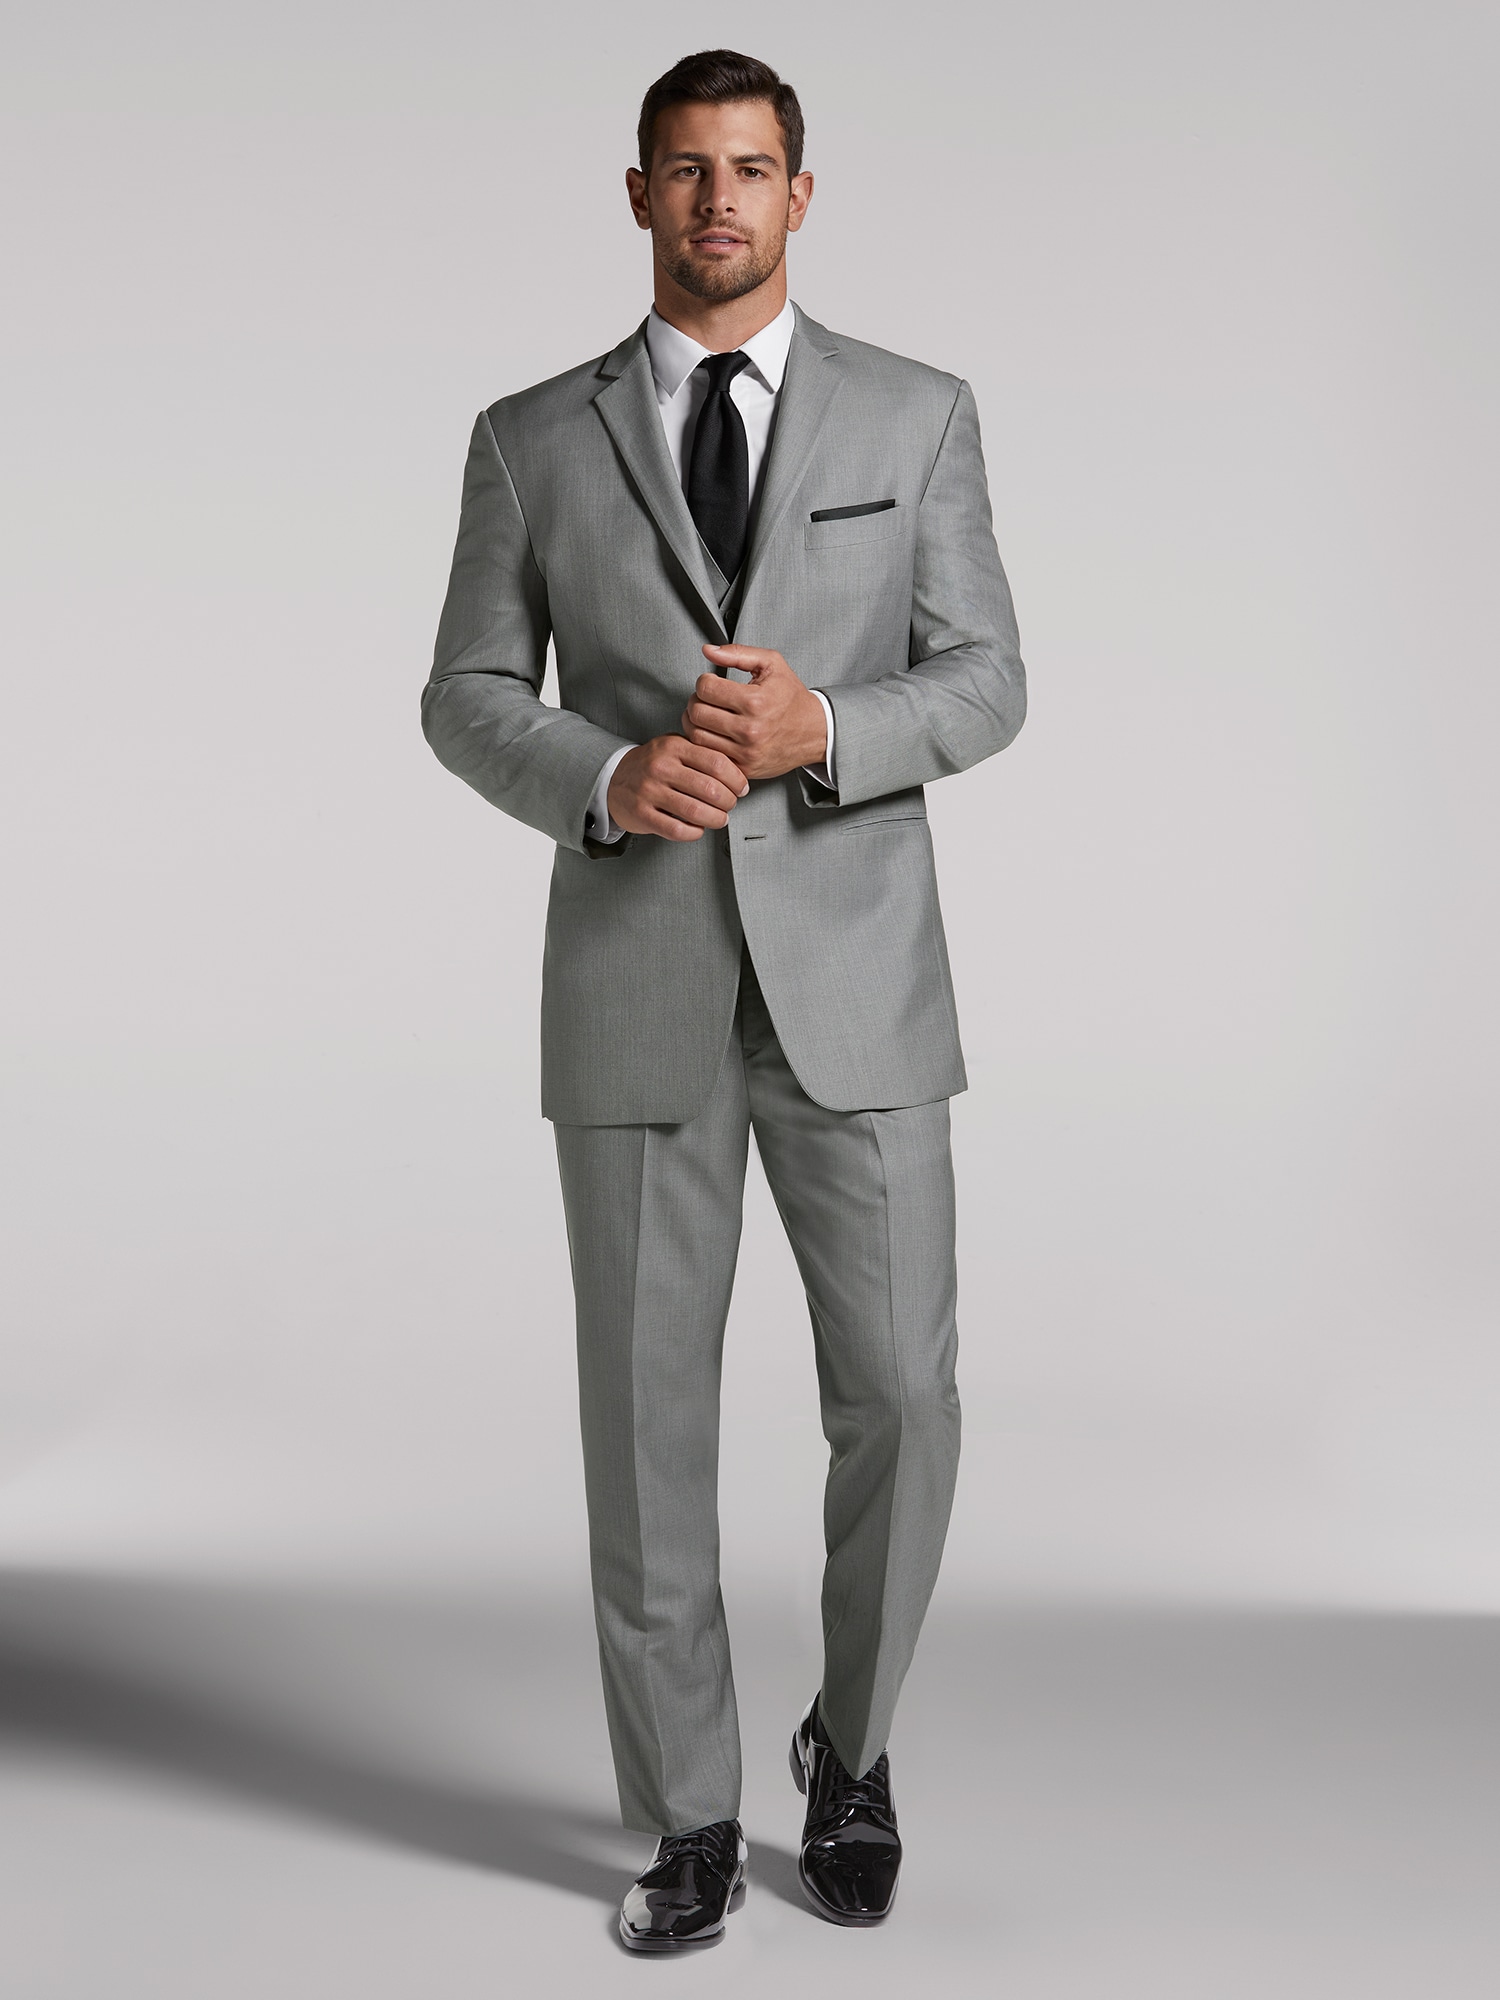 Vintage Men's Grey Suit by Pronto Uomo